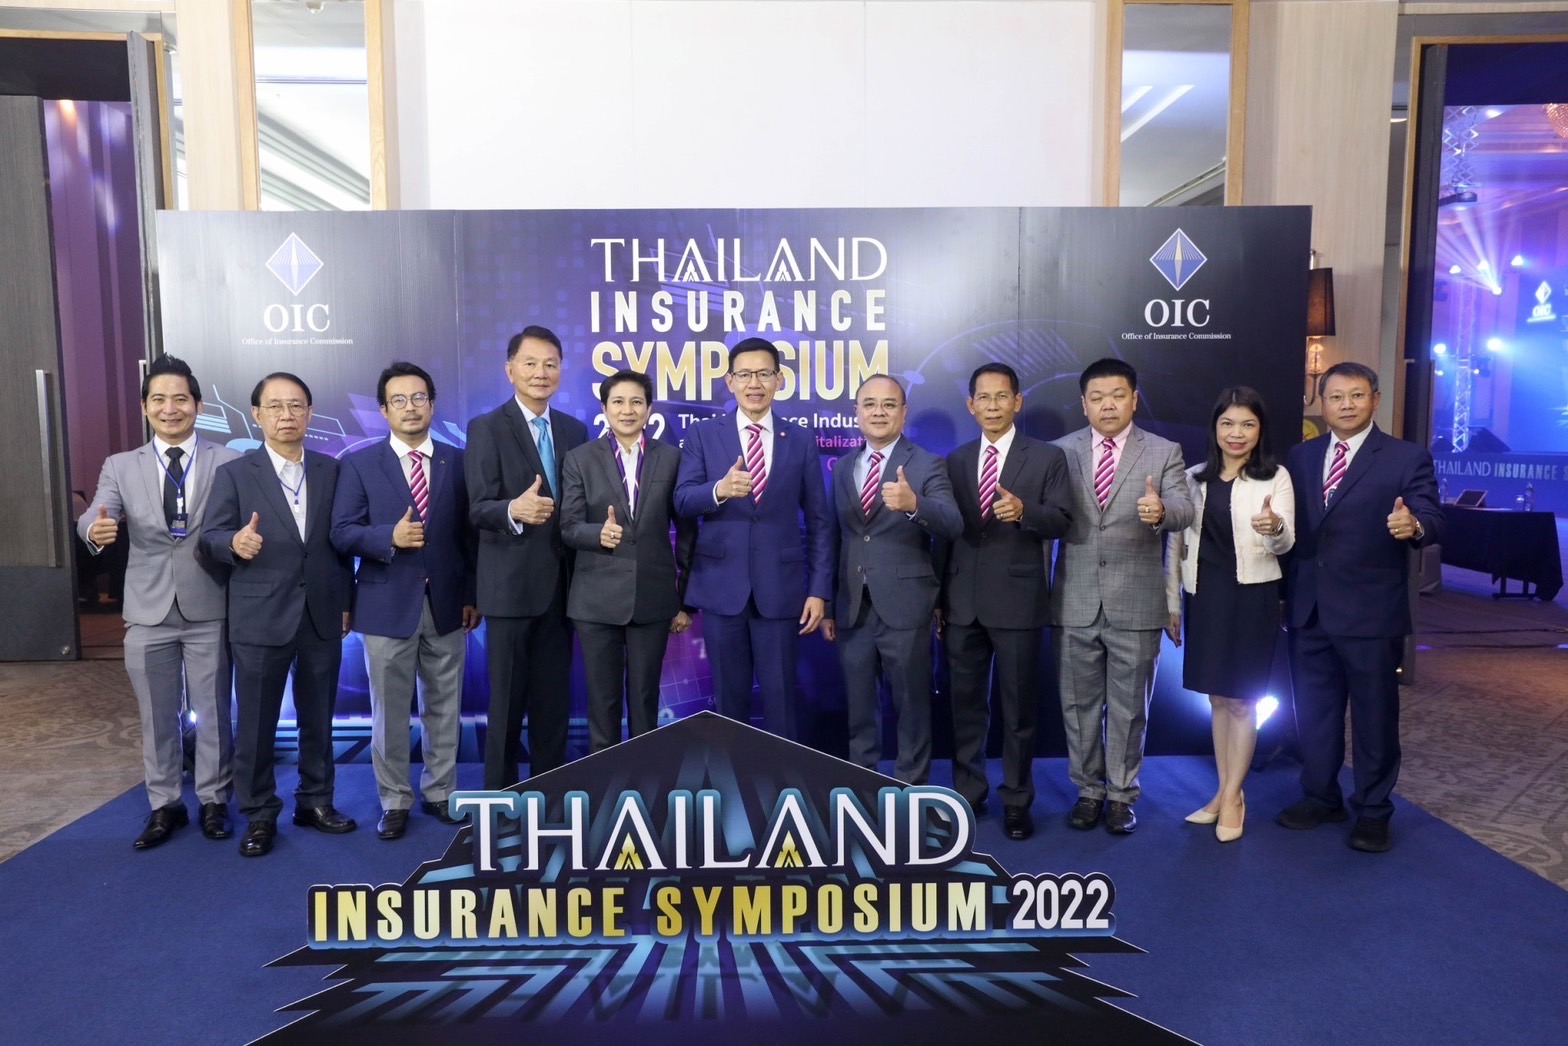 คปภ. เปิดเวทีสัมมนาวิชาการด้านประกันภัย “Thailand Insurance Symposium 2022”